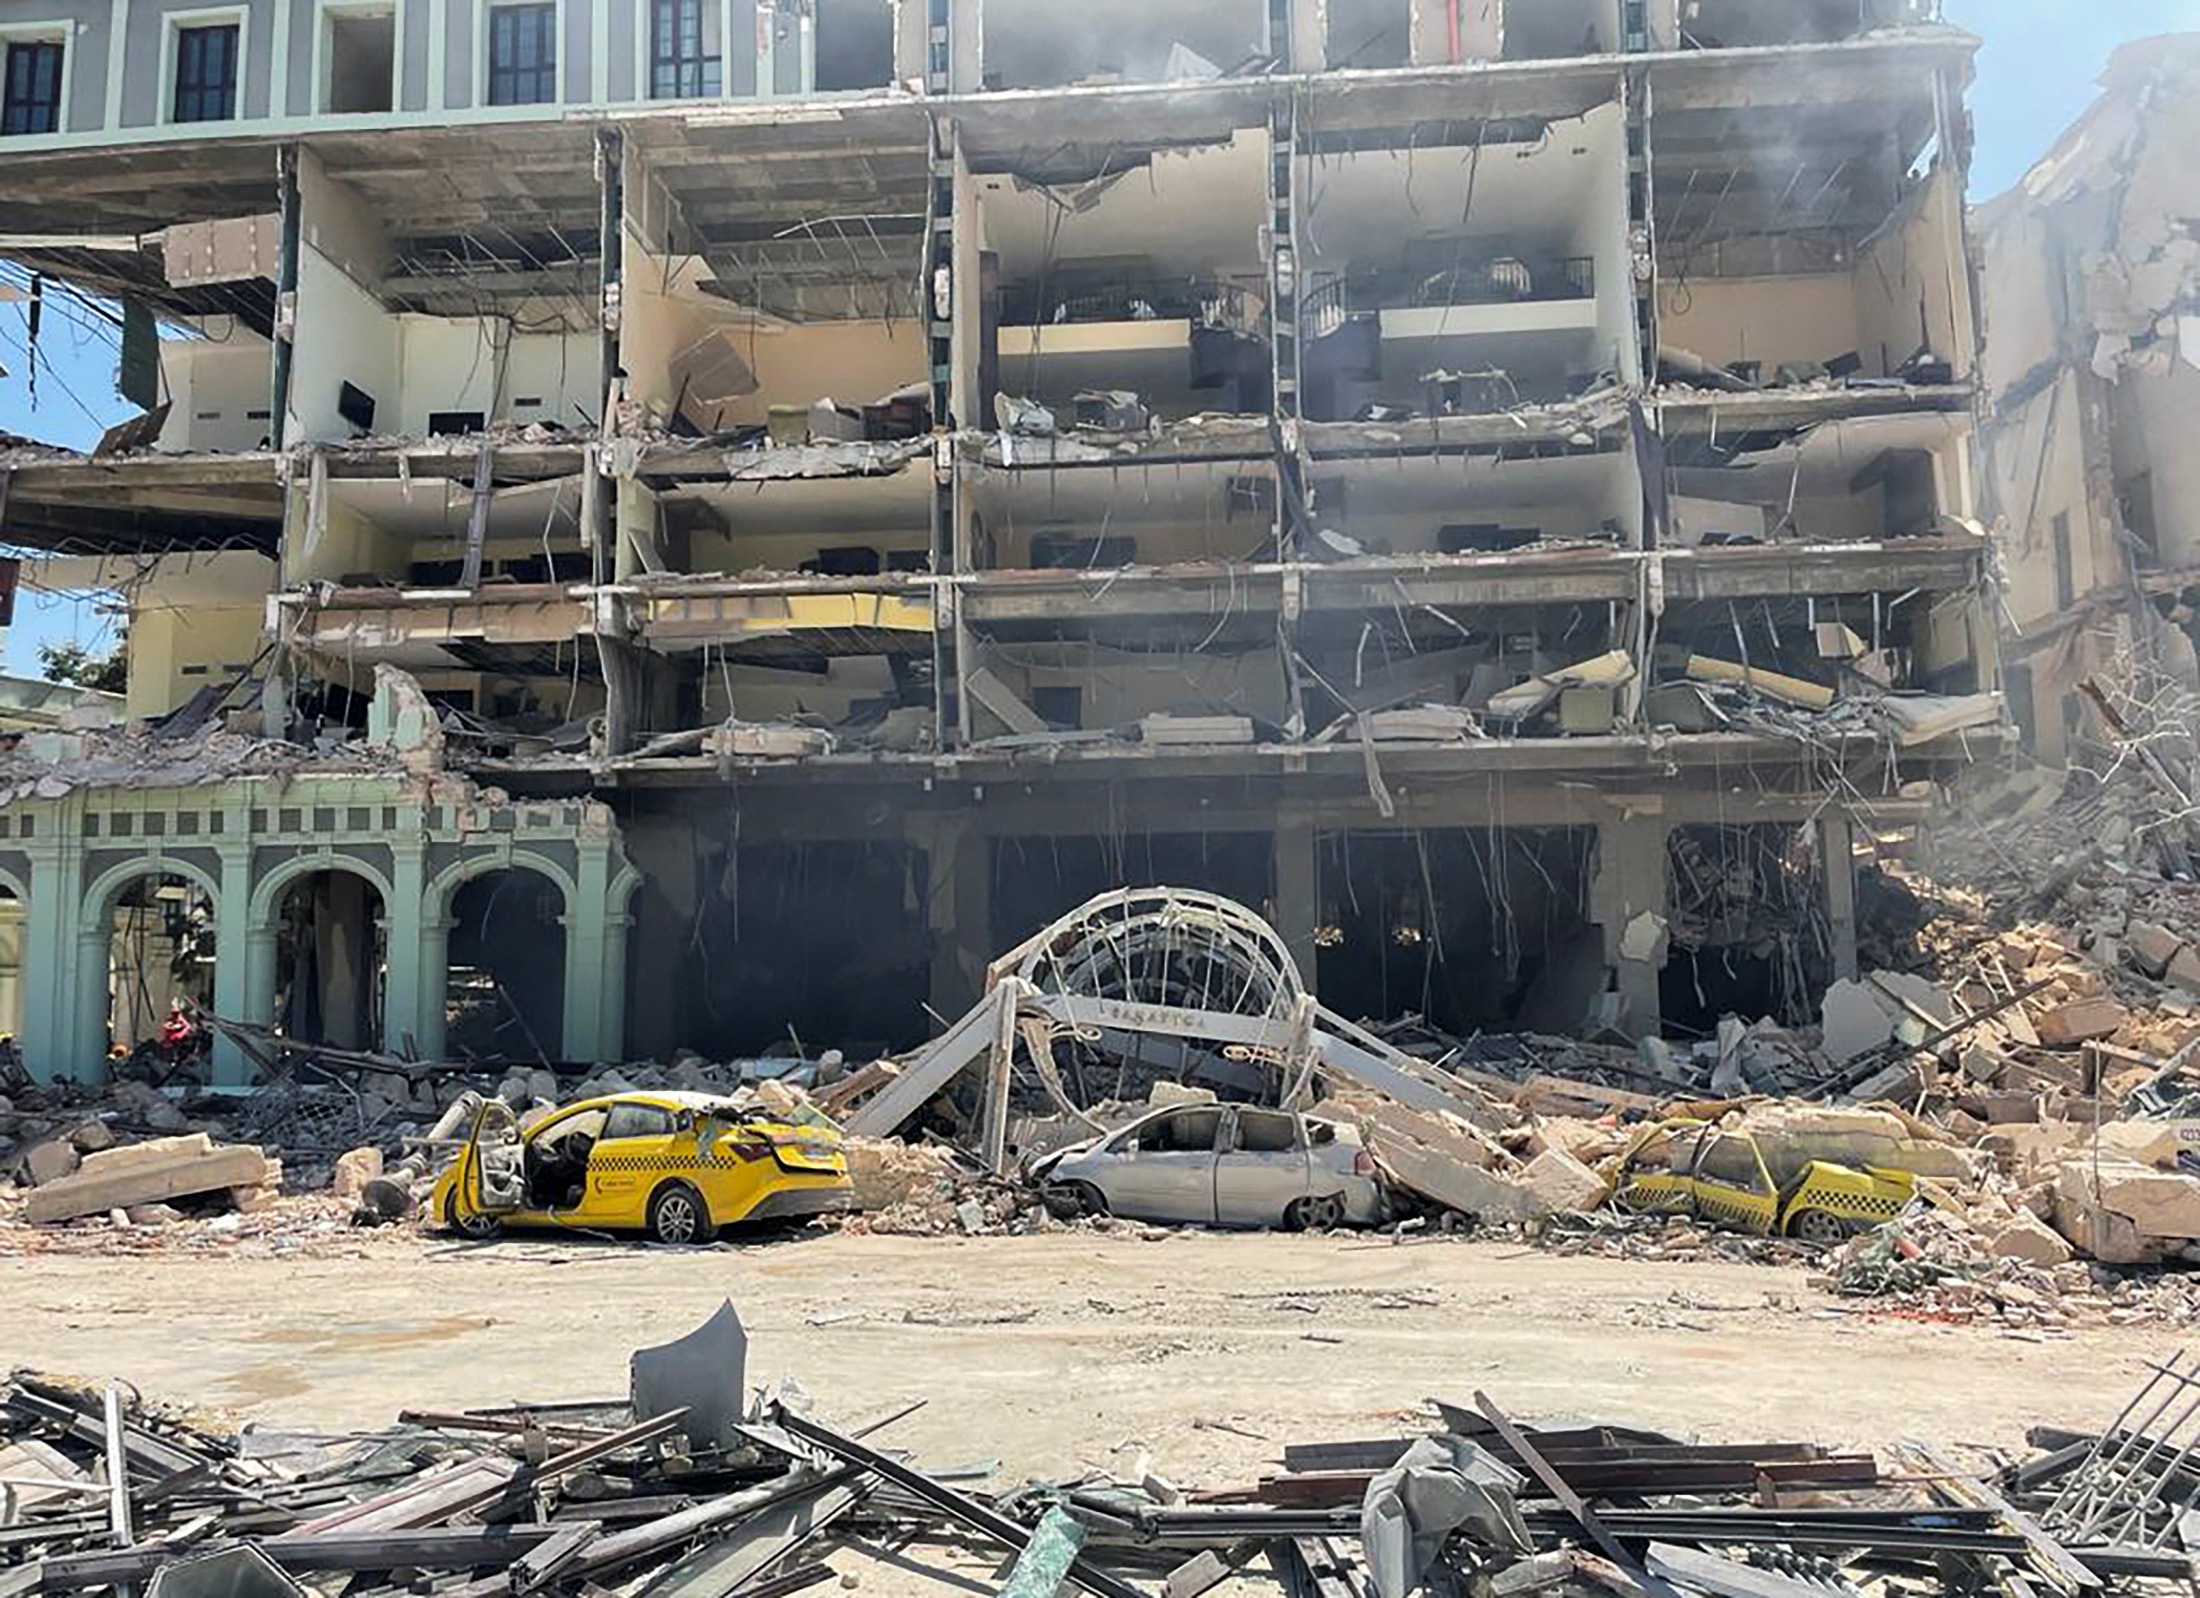 22 dead after huge explosion in Havana